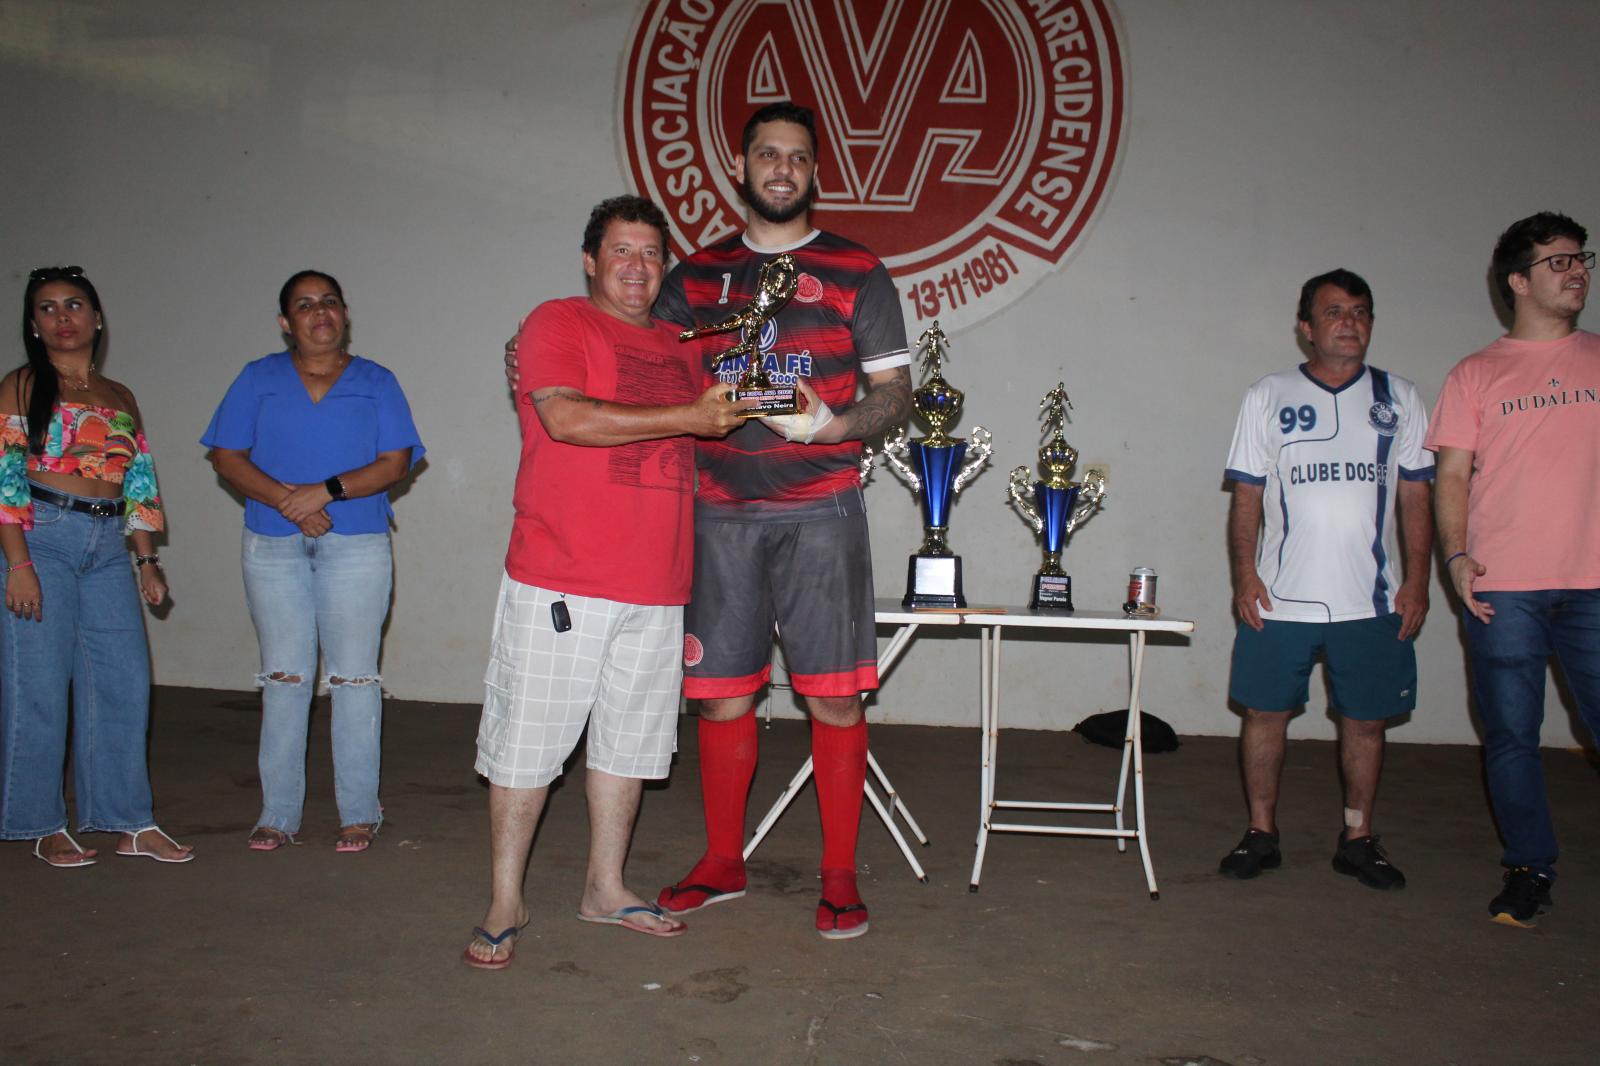 AVA 1/Brasil e Cia conquista o título da copa dos veteranos